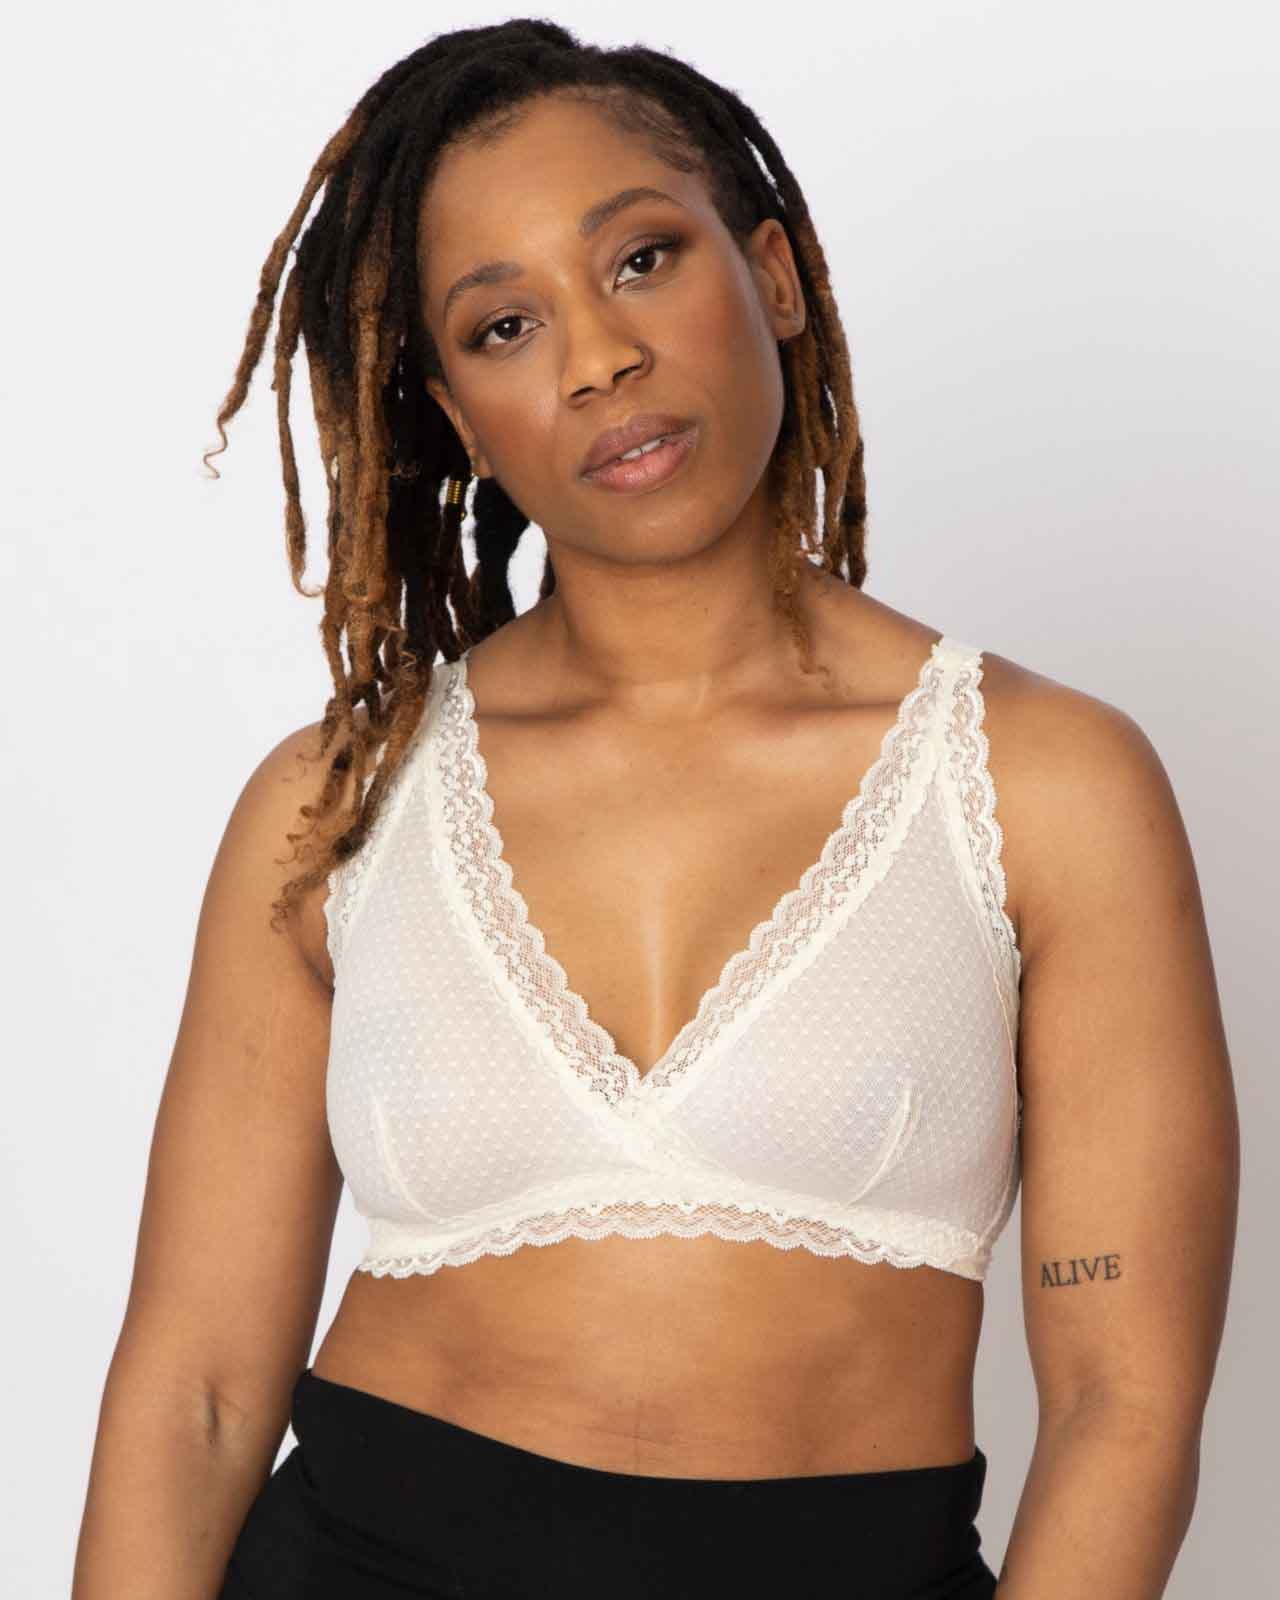 Susan Z. on LinkedIn: woman bralette lace plus size bra tops bras sexy lace  underwear